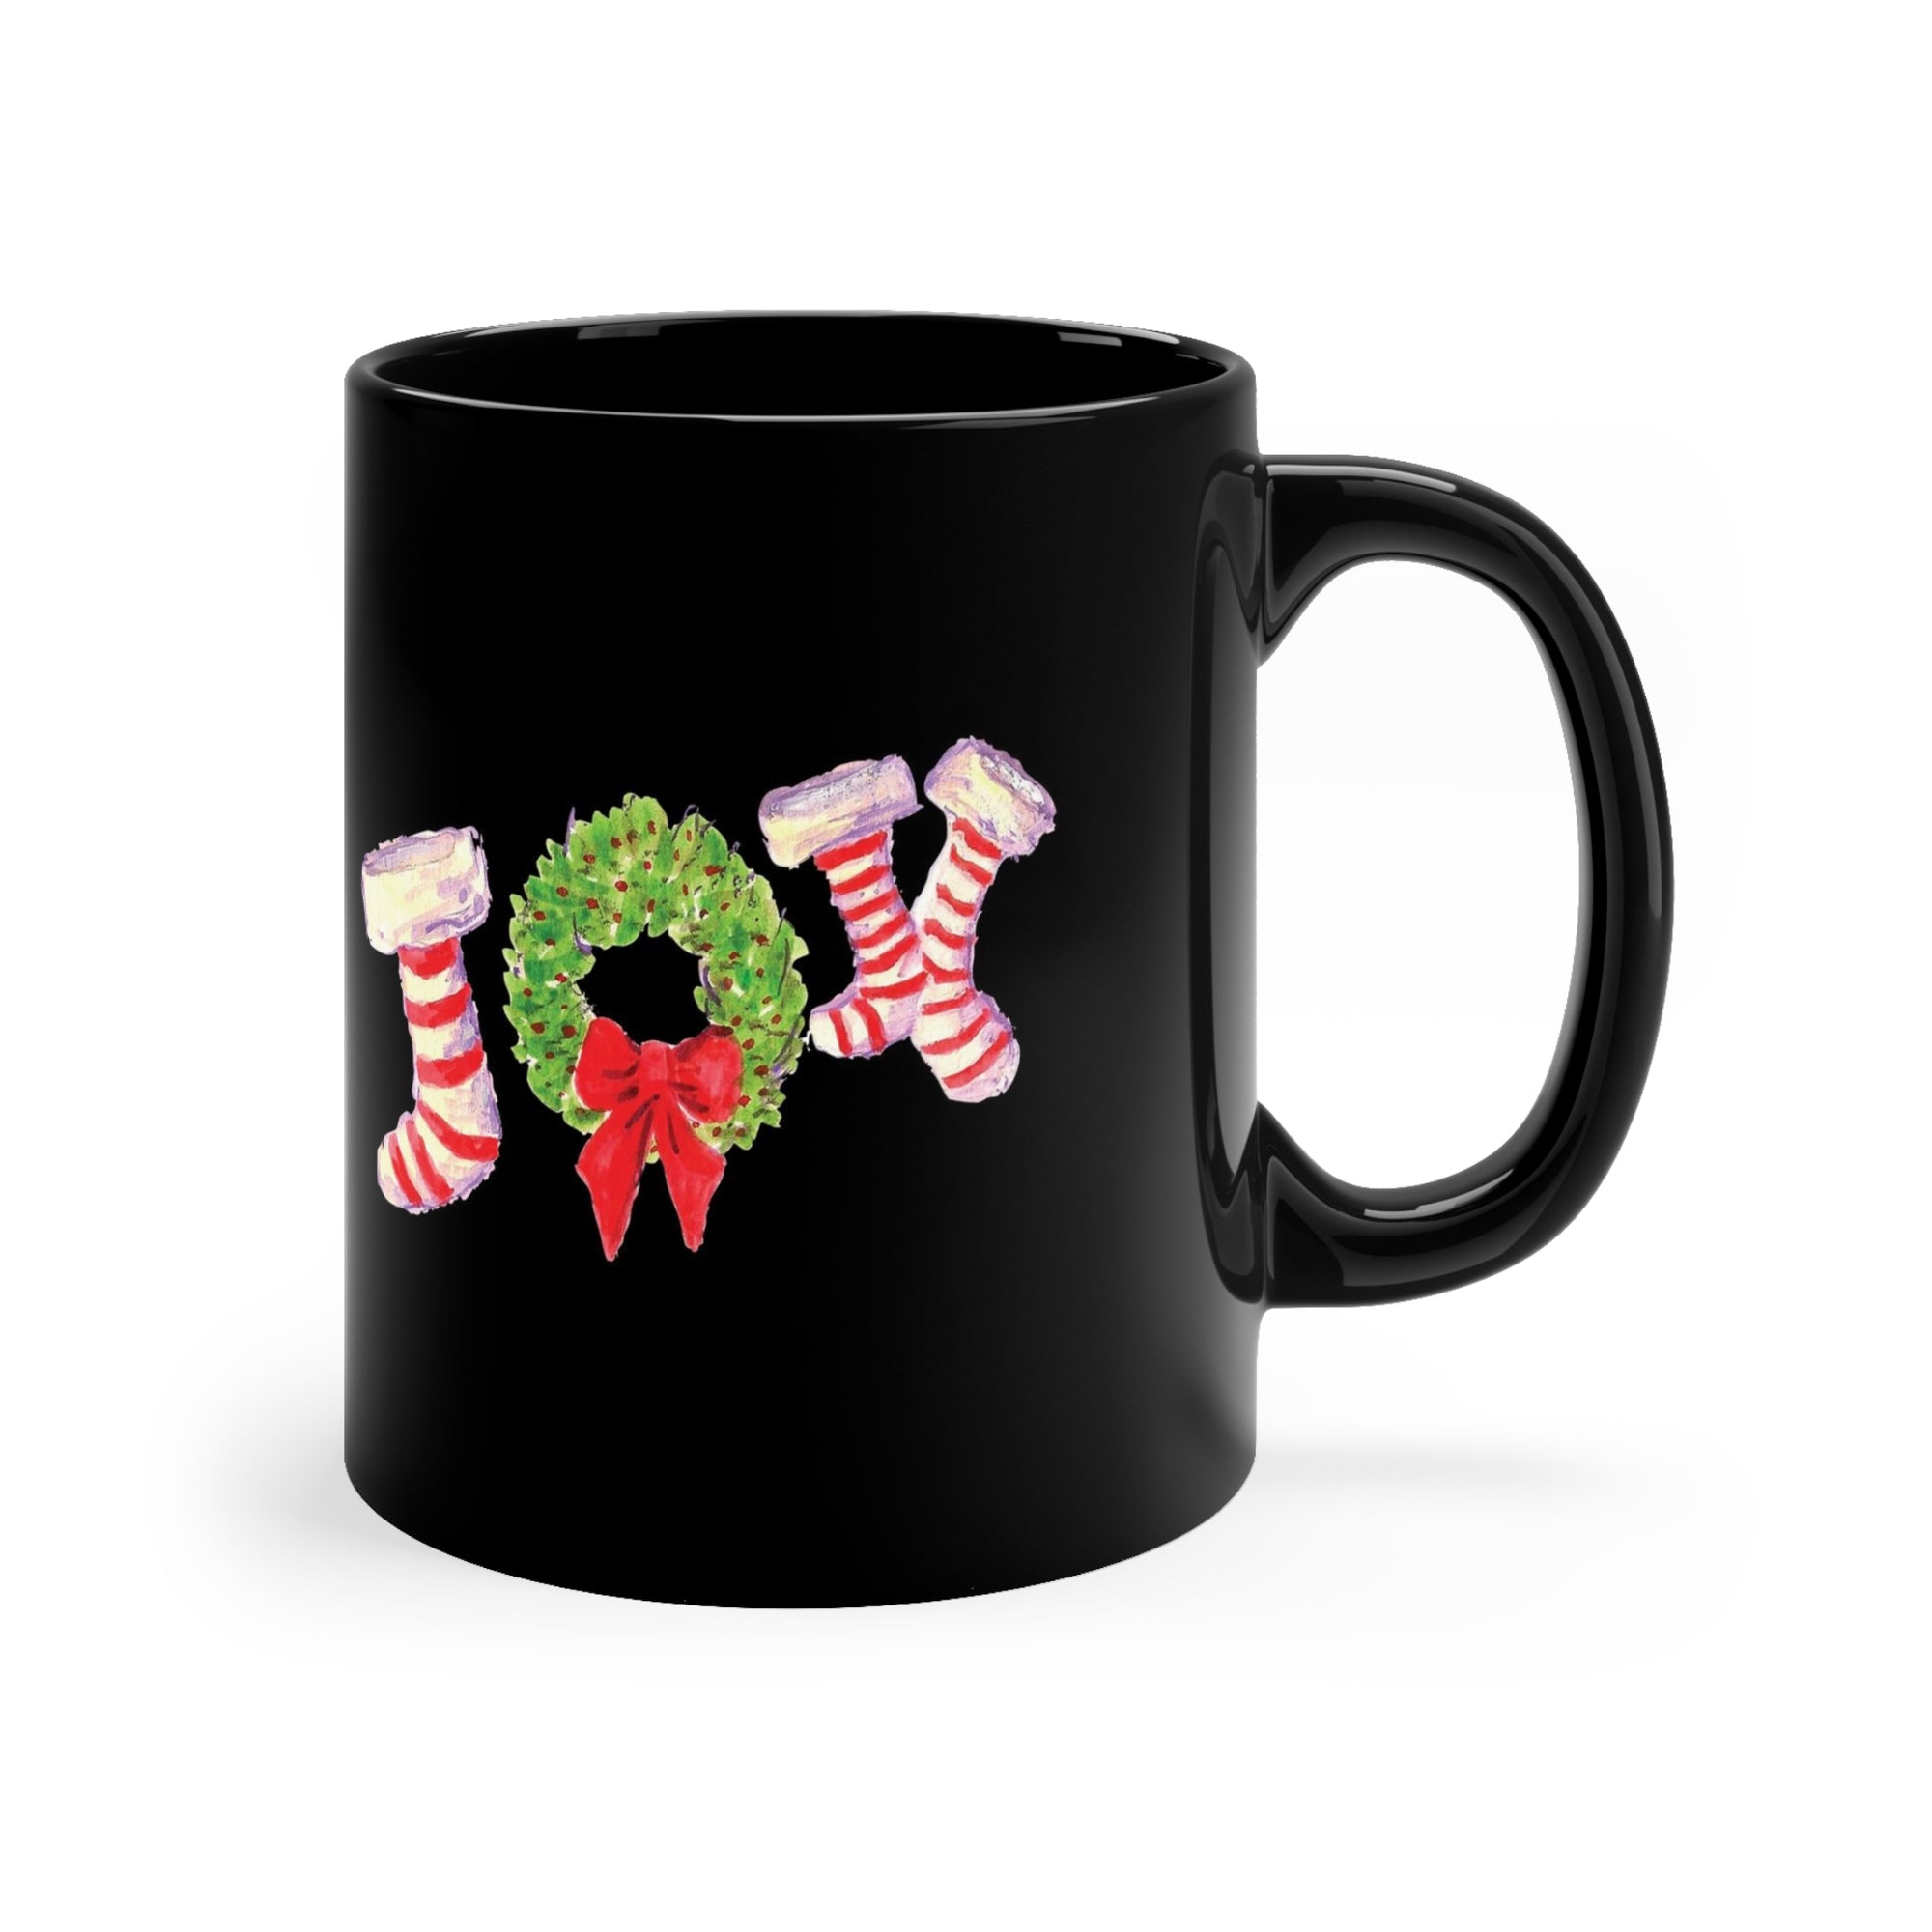 Holiday Festive Joy Stockings Ceramic Mug - Christmas Holiday Mug